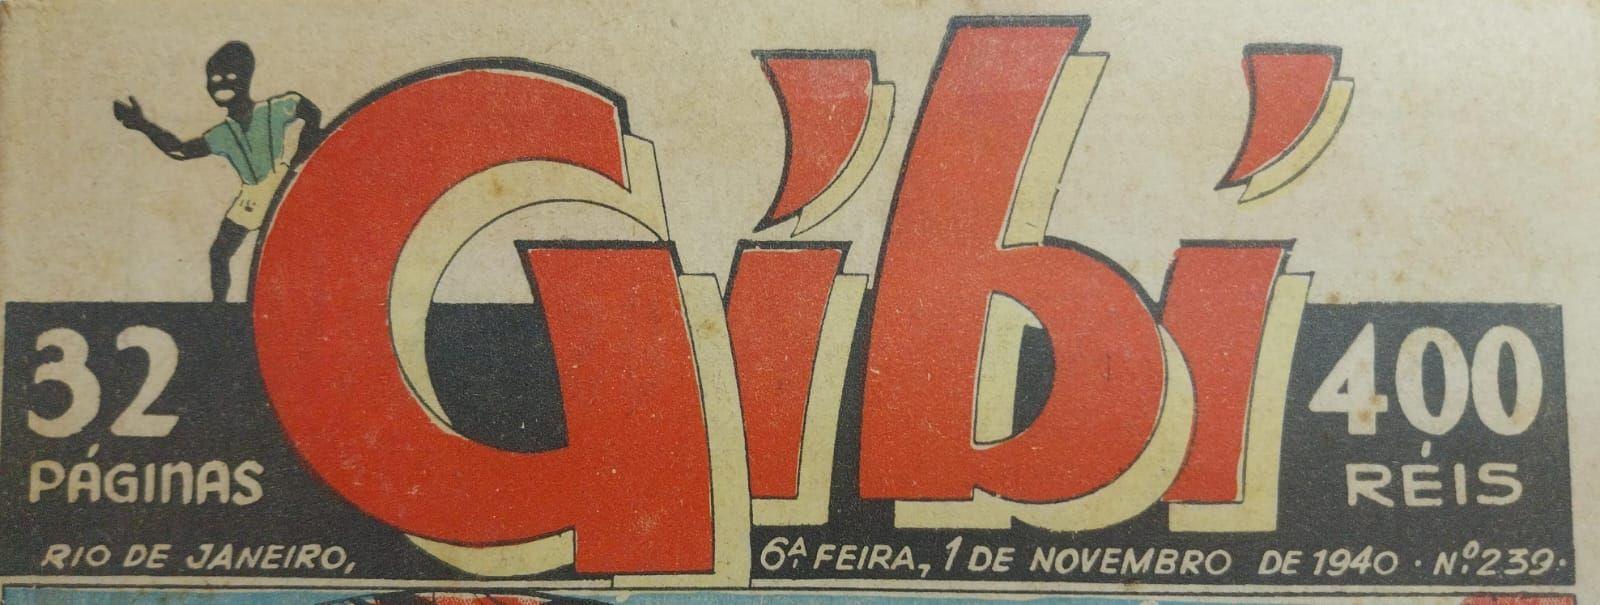 gibi, 85 anos: a história da revista de nome racista que se transformou em sinônimo de hq no brasil